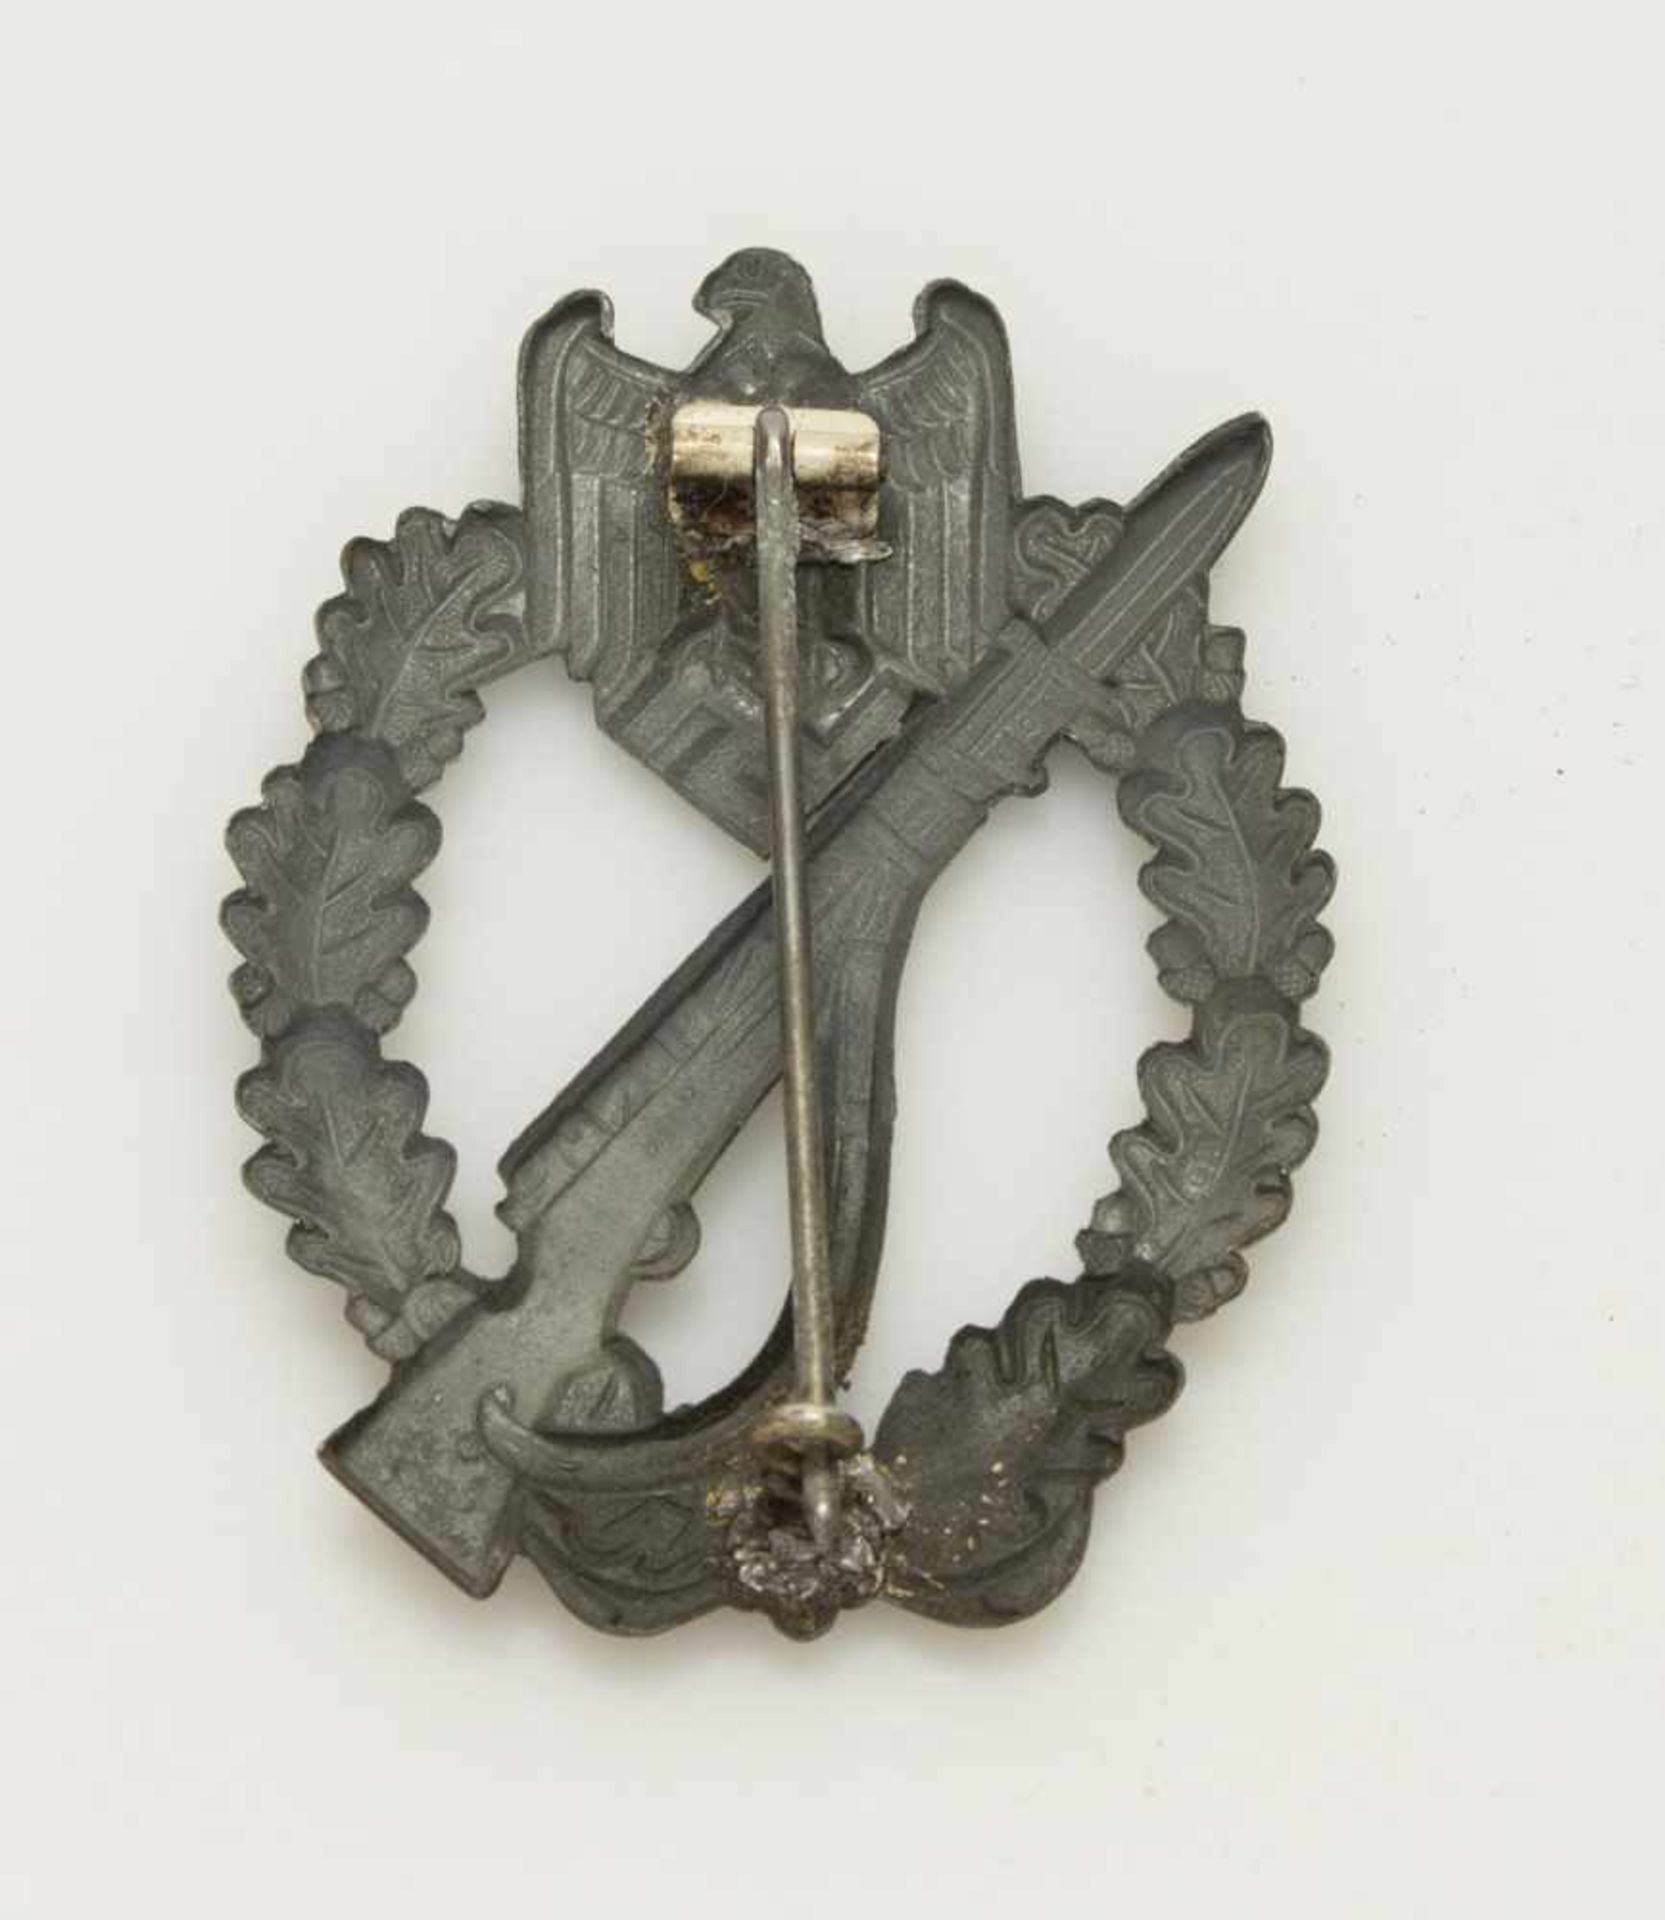 Infanterie Sturmabzeichenin Silber, Hohlprägung, II. WK, Nadel ersetzt - Image 2 of 2